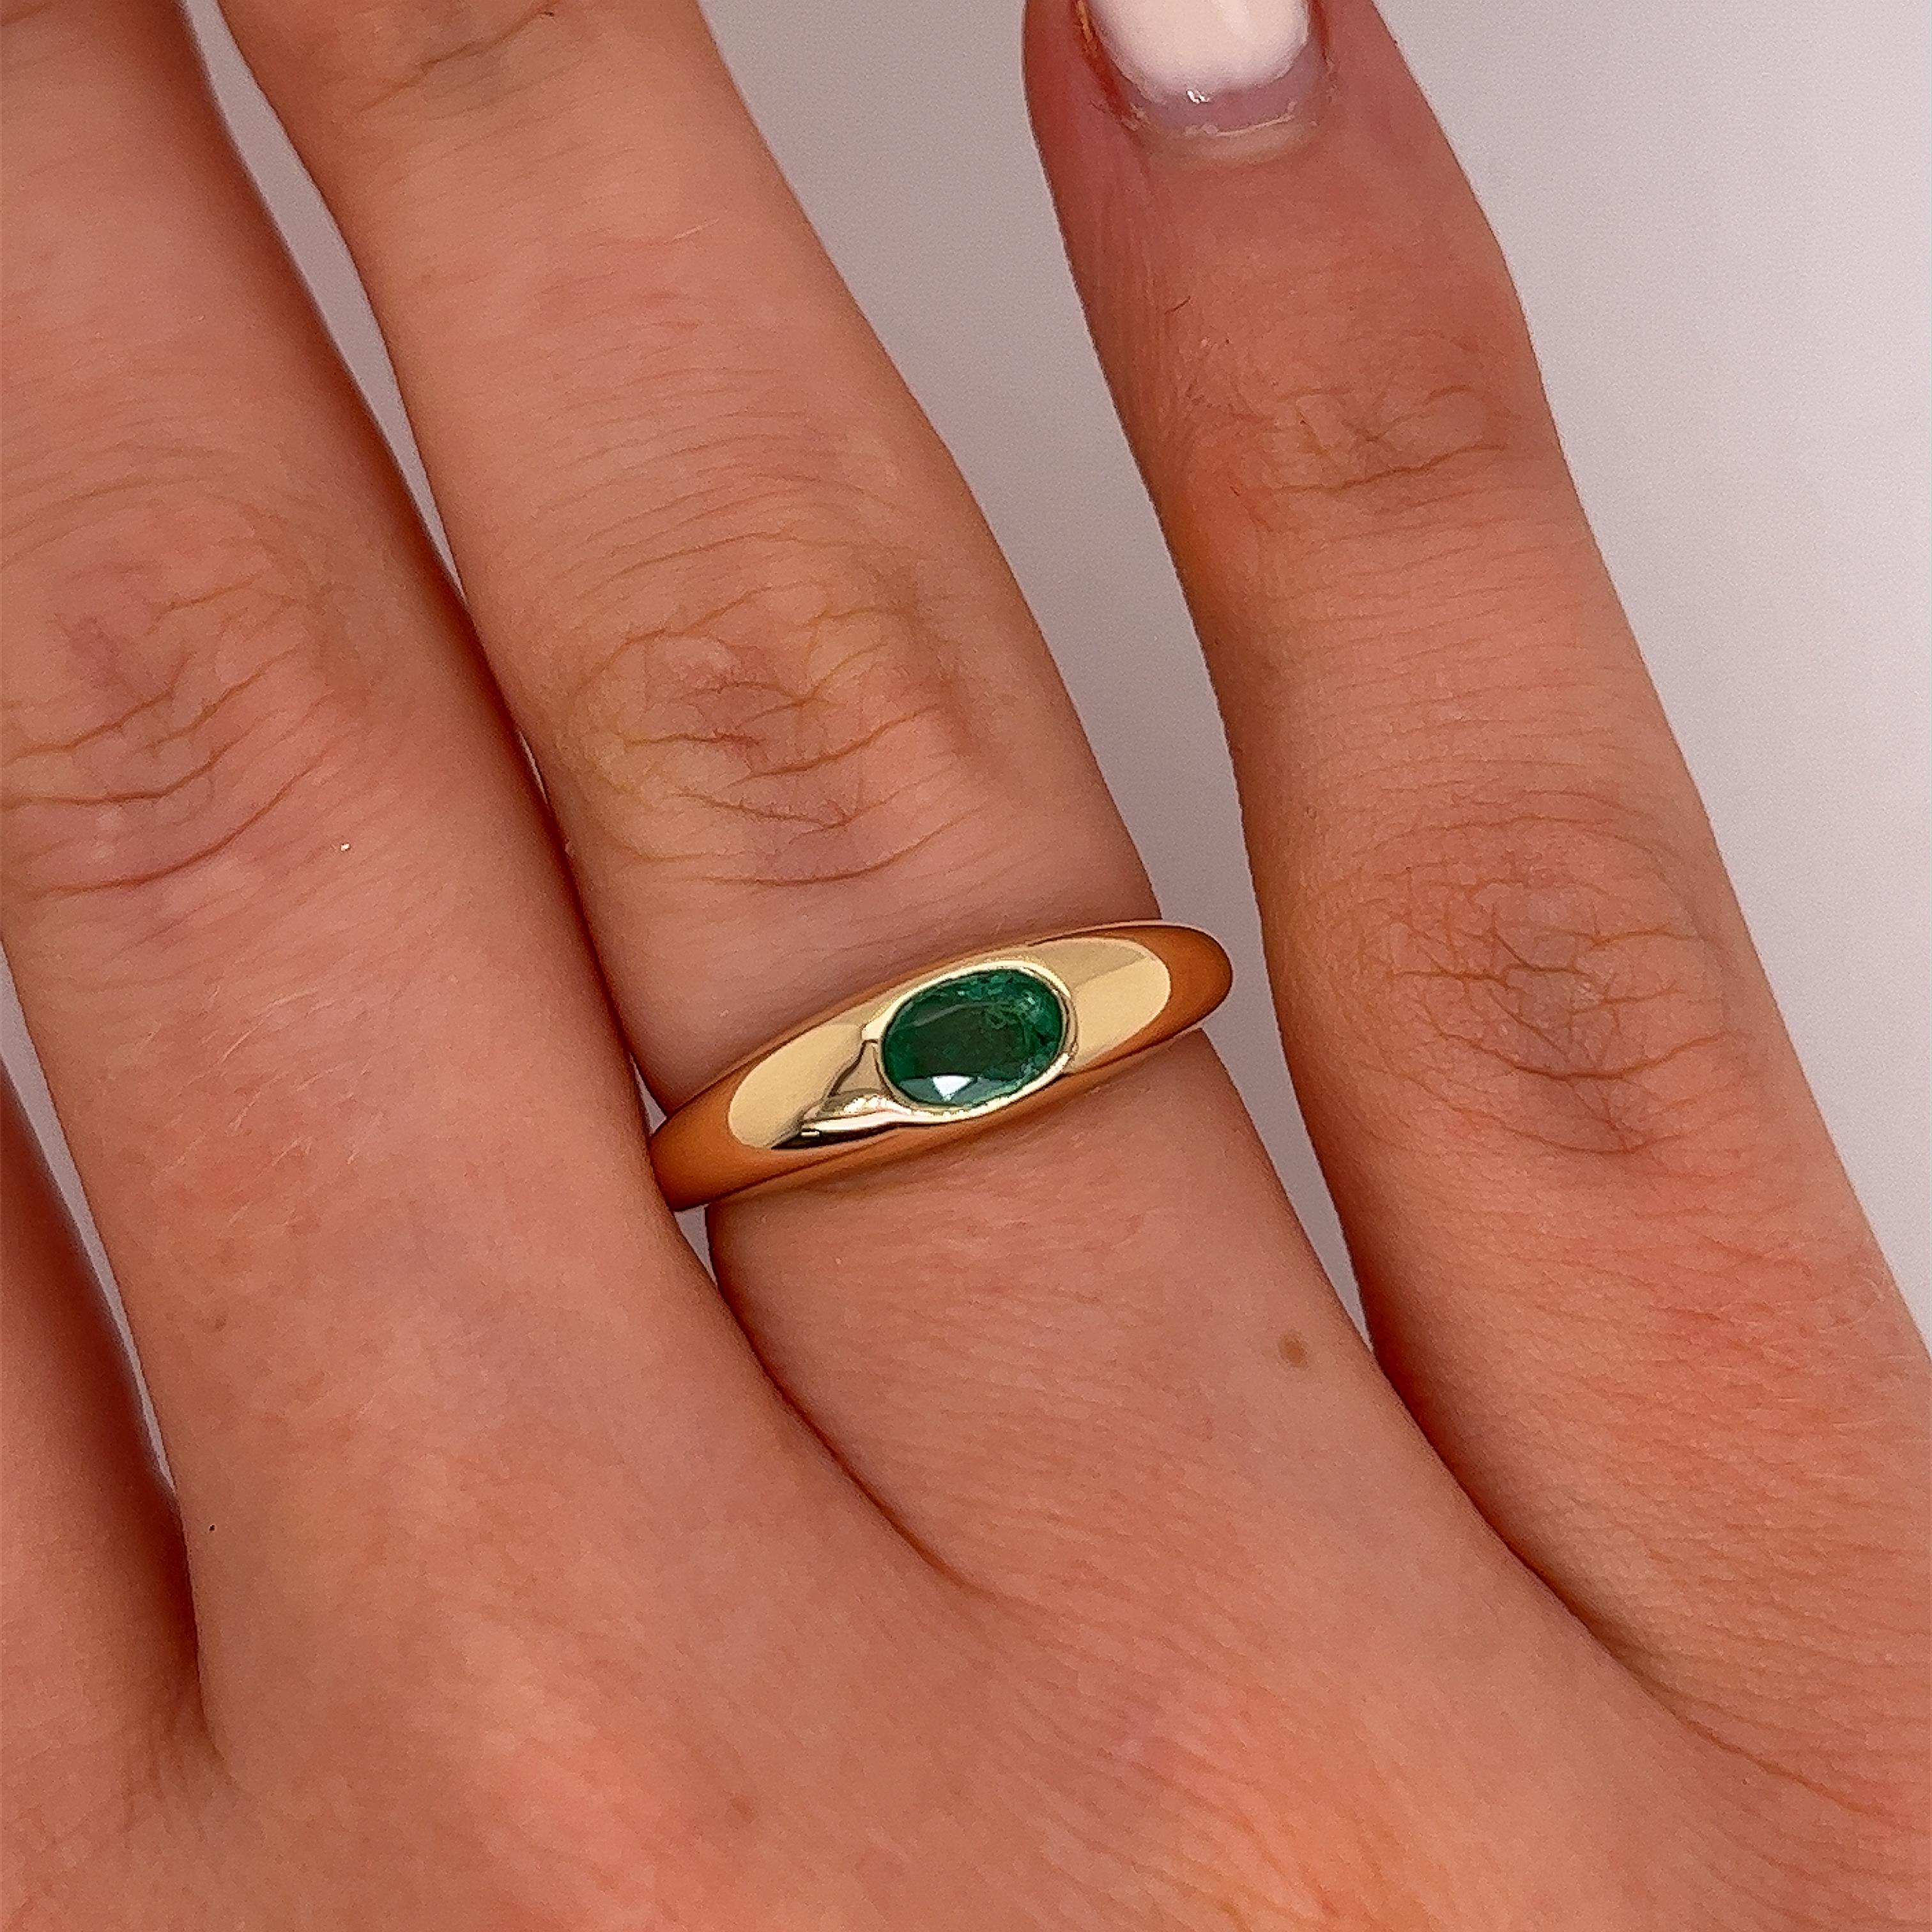 Neu von Jewellery Cave aus 18 Karat Gelbgold 
Single Stone Ring, besetzt mit einem ovalen 0,40ct natürlichen Smaragd,
Der Ring ist eine perfekte Ergänzung zu jedem Ensemble 
und kann zu jeder Gelegenheit getragen werden.
Gesamtgewicht Smaragd: